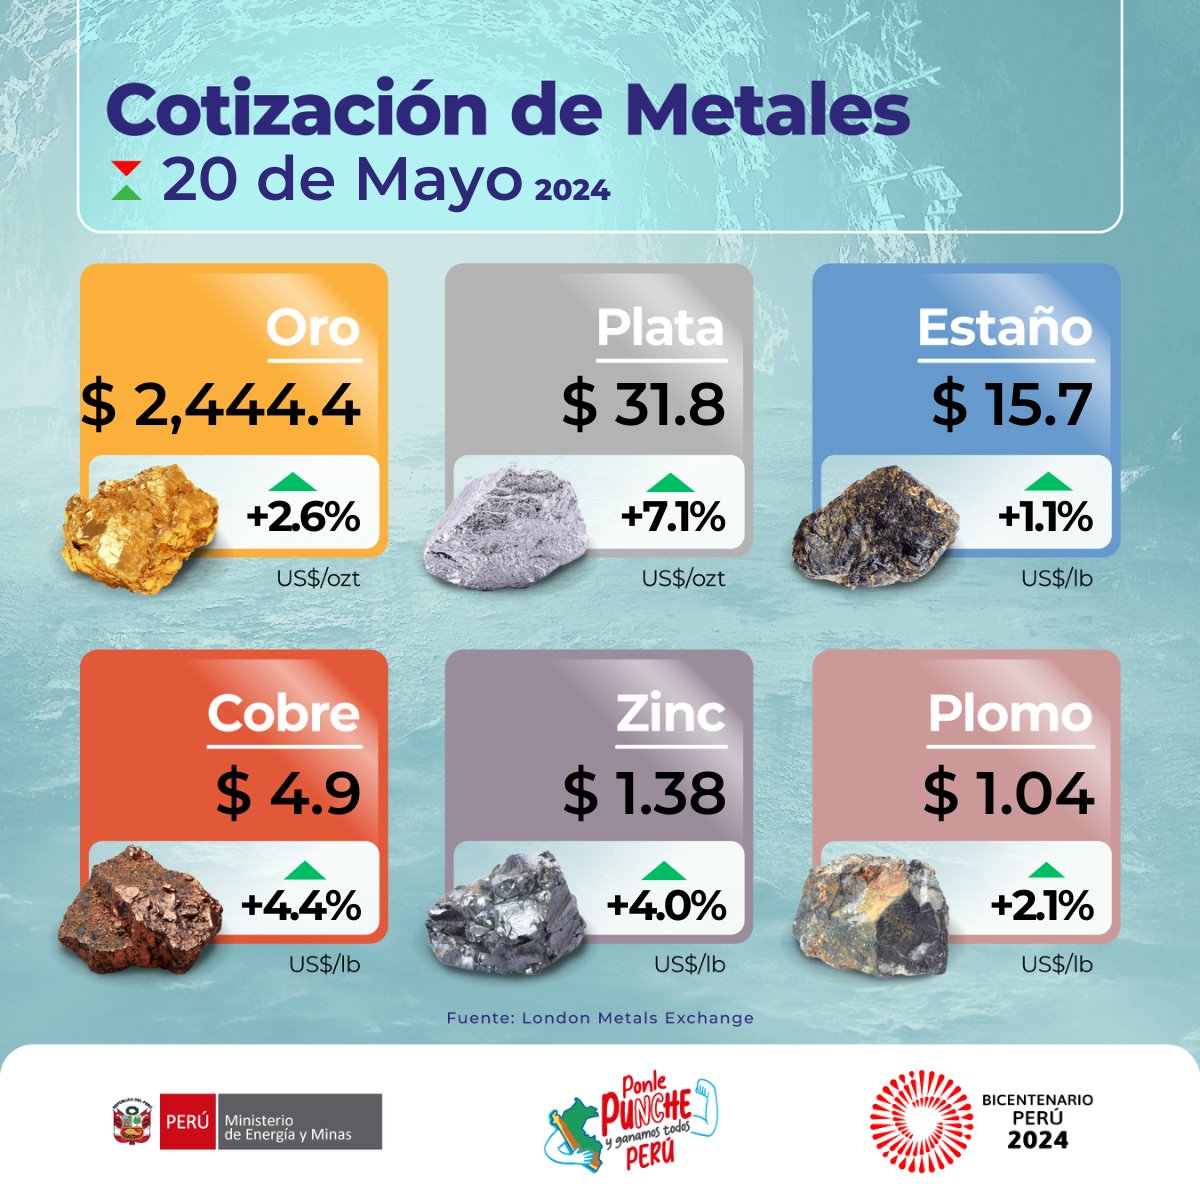 🪙 Conoce la cotización internacional de los metales más importantes en la economía peruana para hoy lunes 20 de mayo de 2024 y su variación respecto al viernes pasado. 🟡 ORO ⚪️ PLATA 🔵 ESTAÑO 🟠 COBRE ⚫ ZINC 🟤 PLOMO #CotizaciónDeMetales